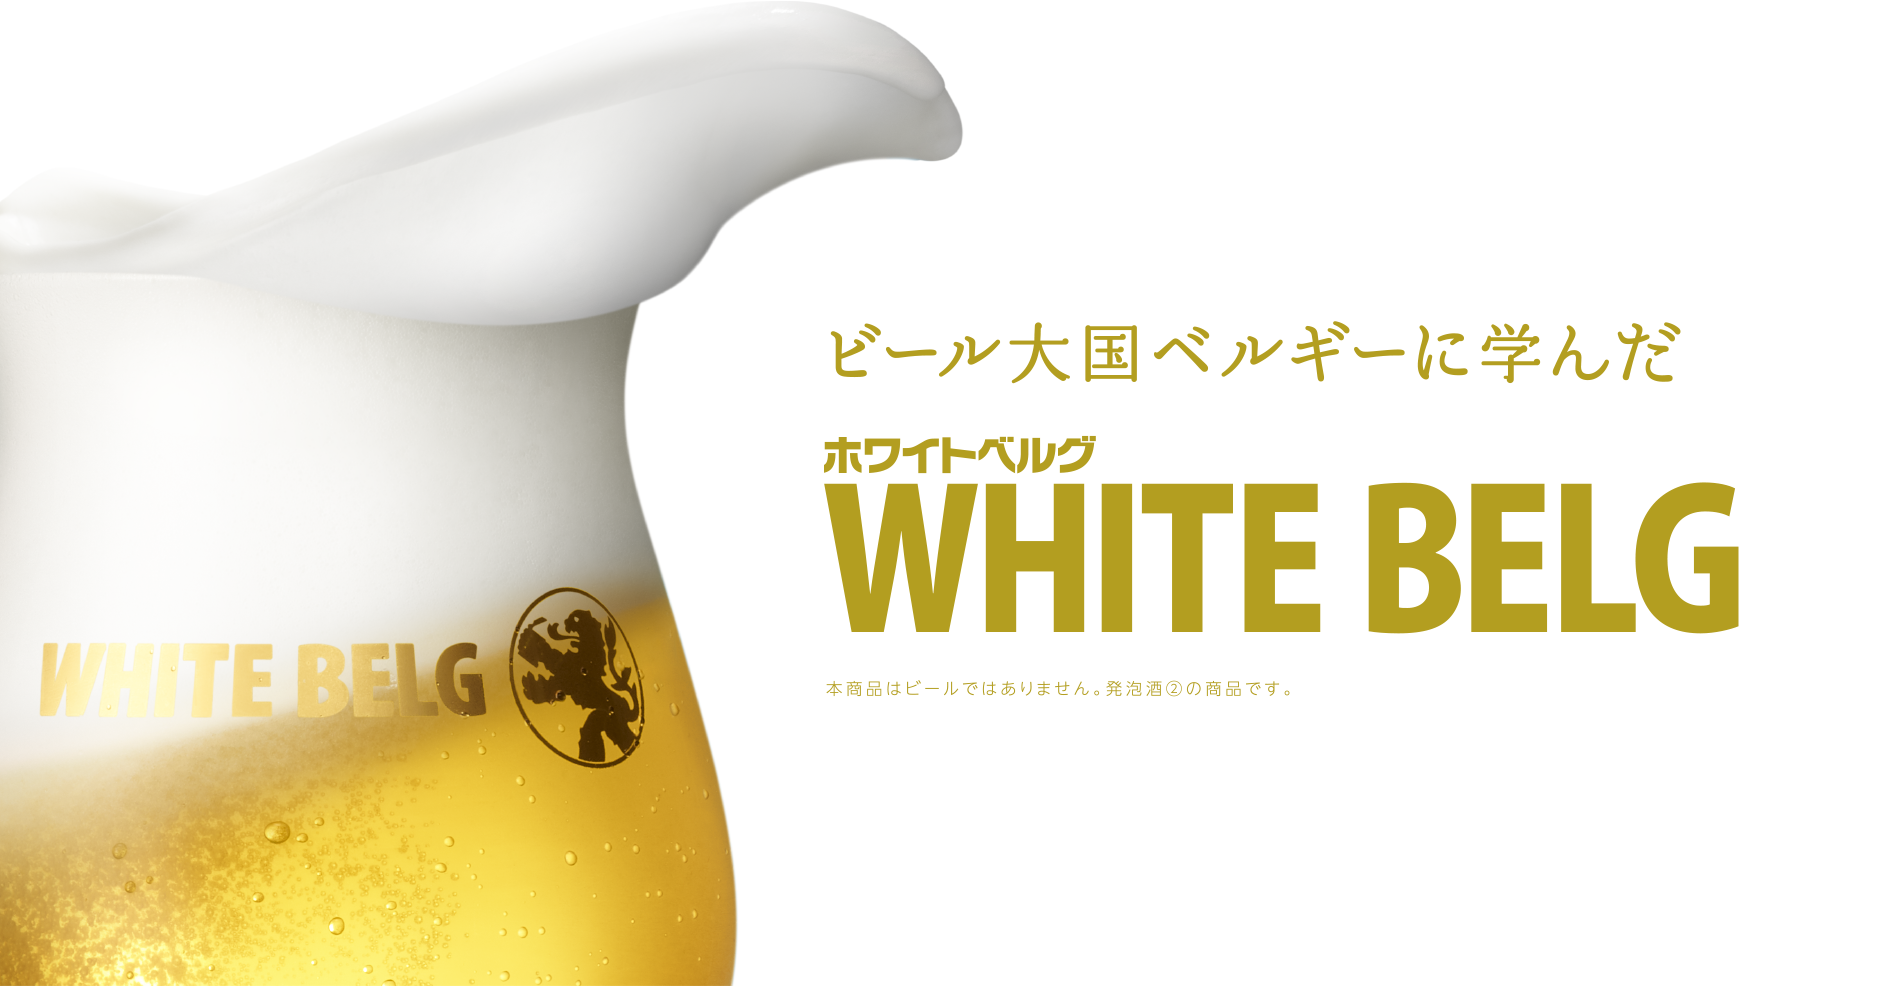 ビール大国ベルギーに学んだホワイトベルグ ※本商品はビールではありません。発泡酒②の商品です。